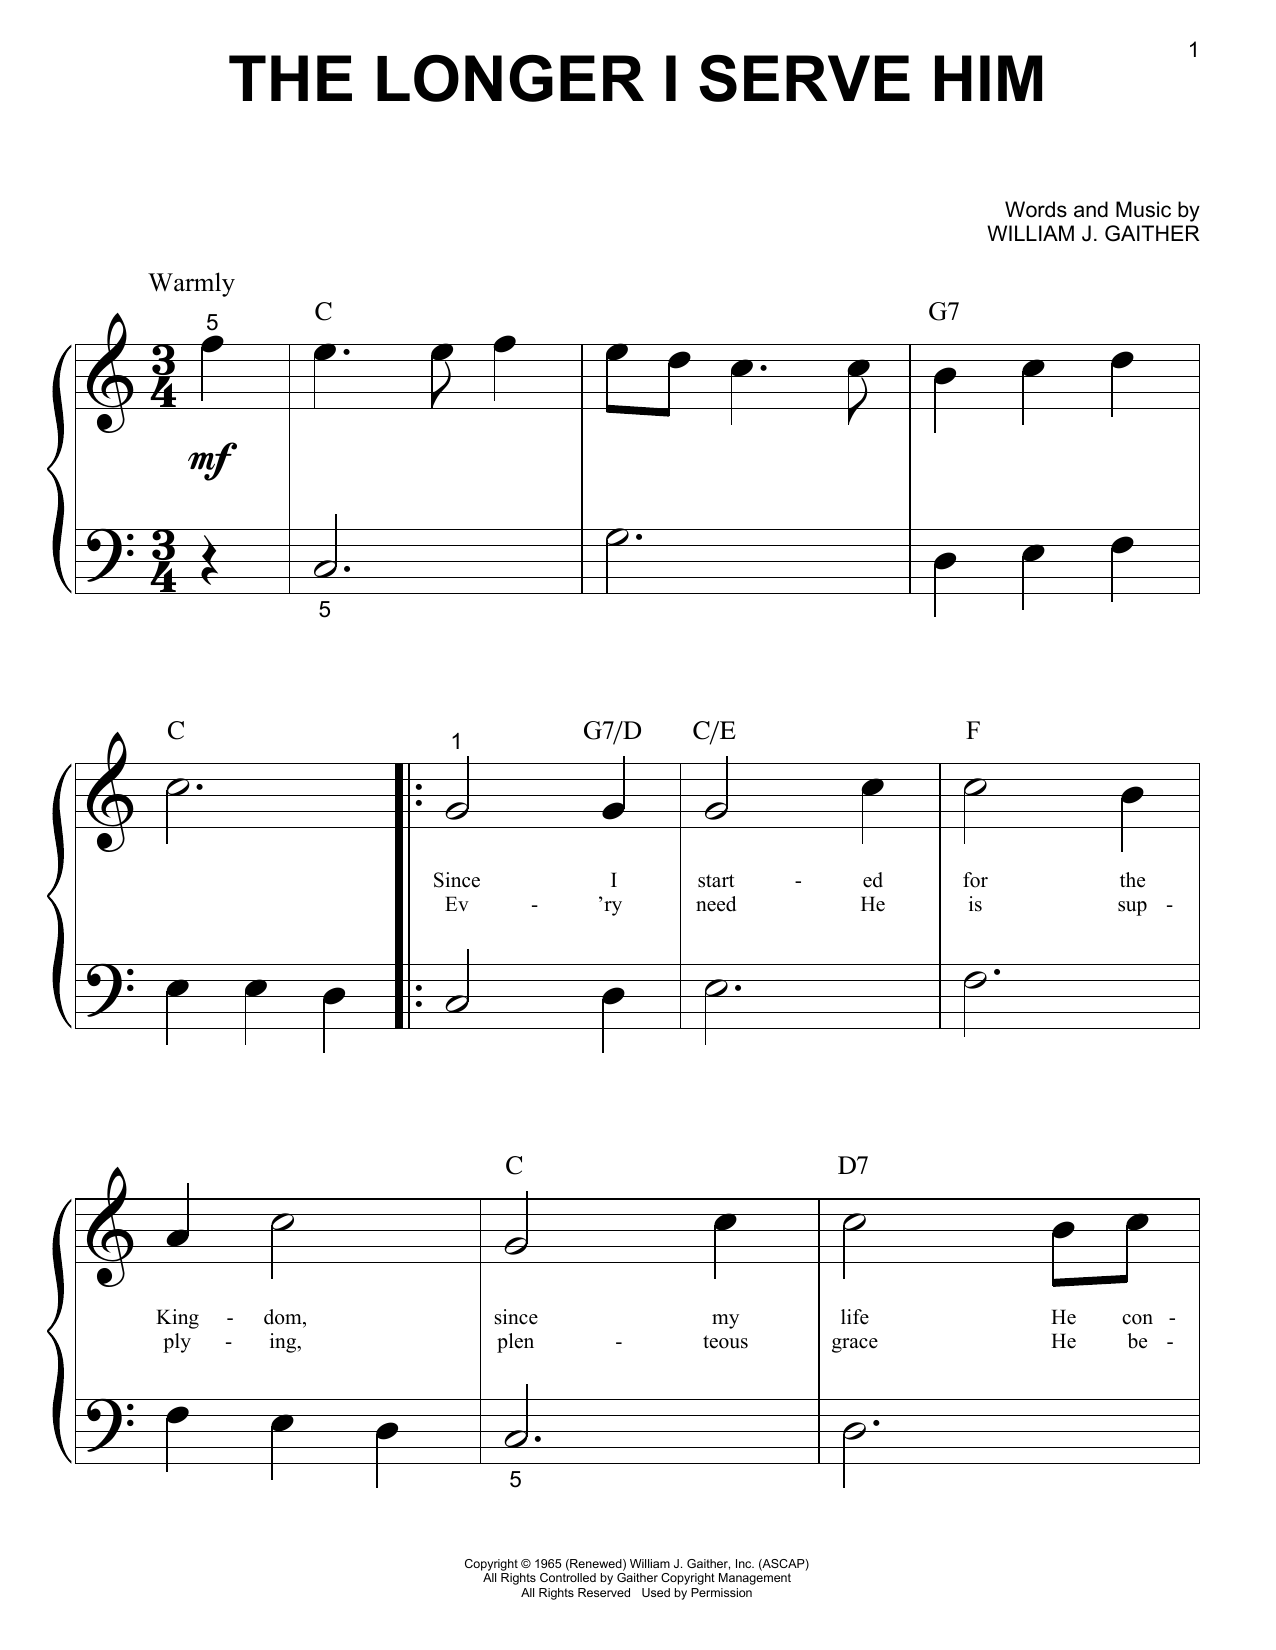 William J. Gaither The Longer I Serve Him Sheet Music Notes & Chords for Ukulele - Download or Print PDF